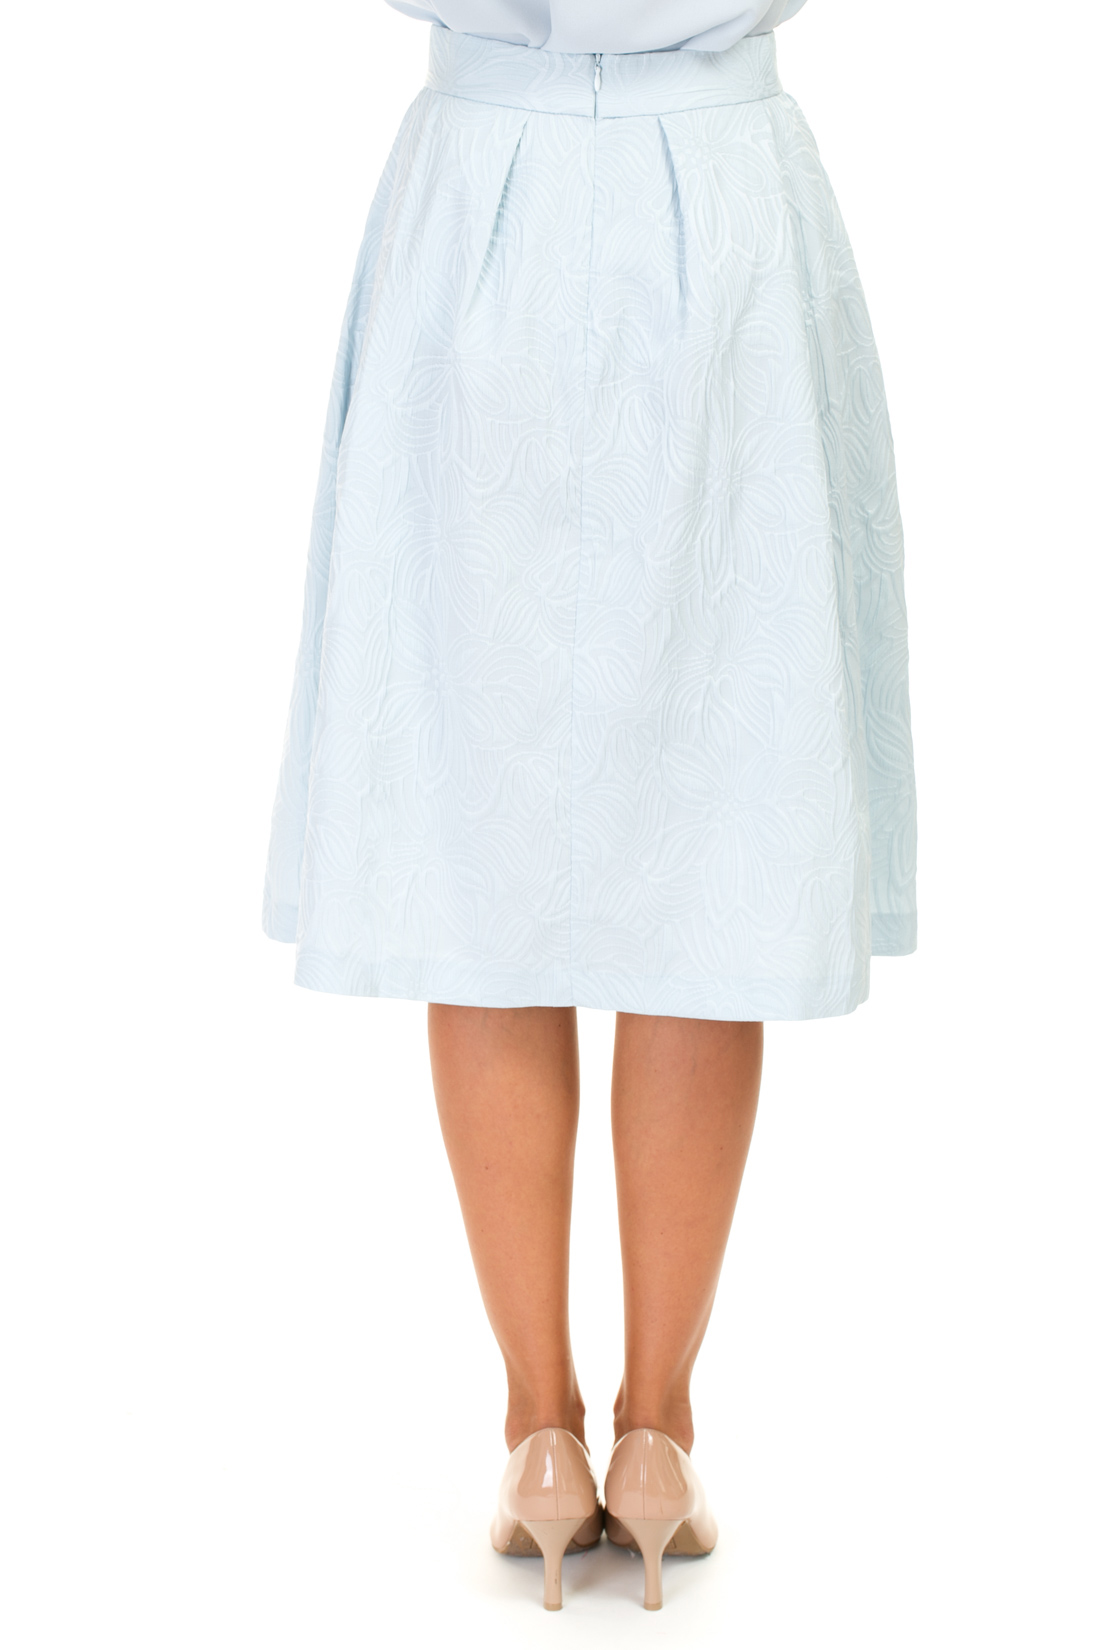 Пышная юбка из жаккардового материала (арт. baon B477027), размер M, цвет белый Пышная юбка из жаккардового материала (арт. baon B477027) - фото 2